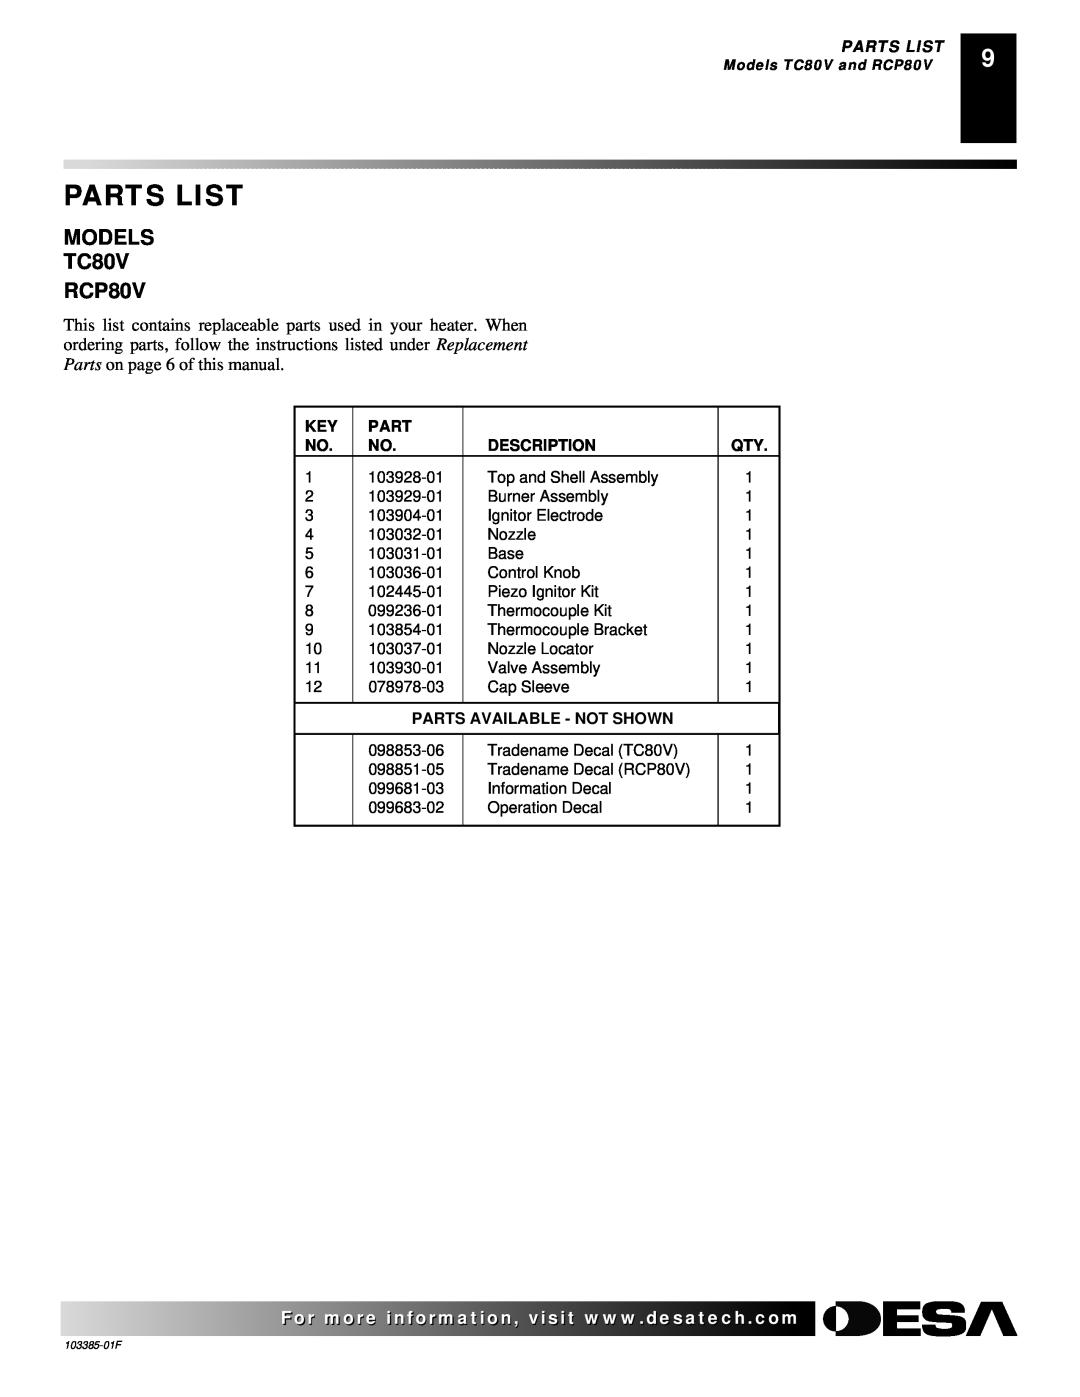 Desa 40, 80, 60 owner manual Parts List, Description, Parts Available - Not Shown 